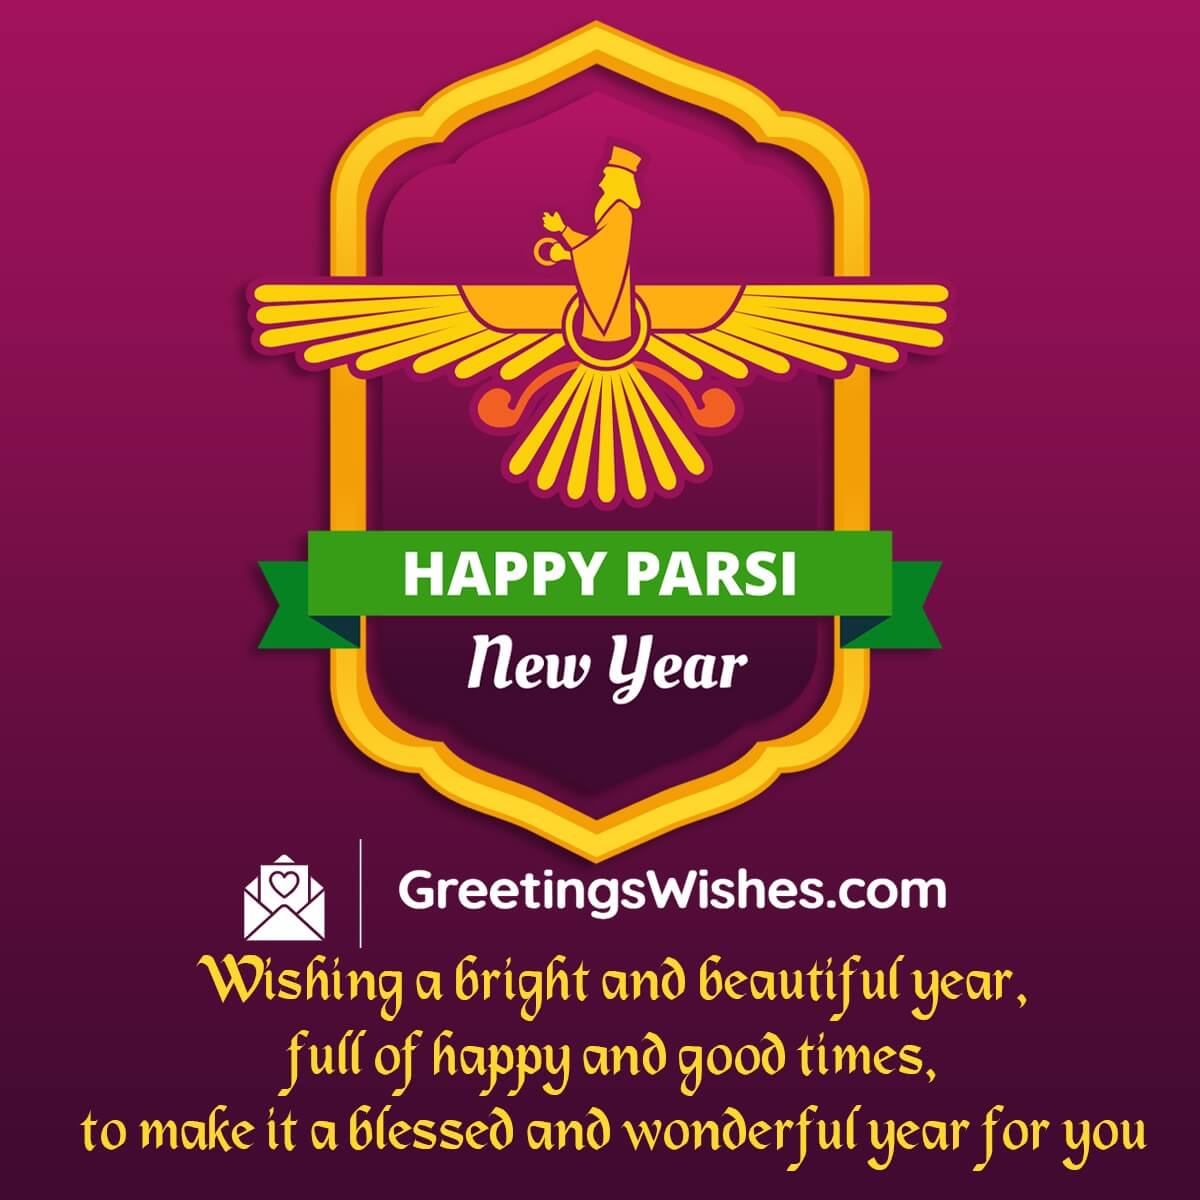 Happy Parsi New Year Wish